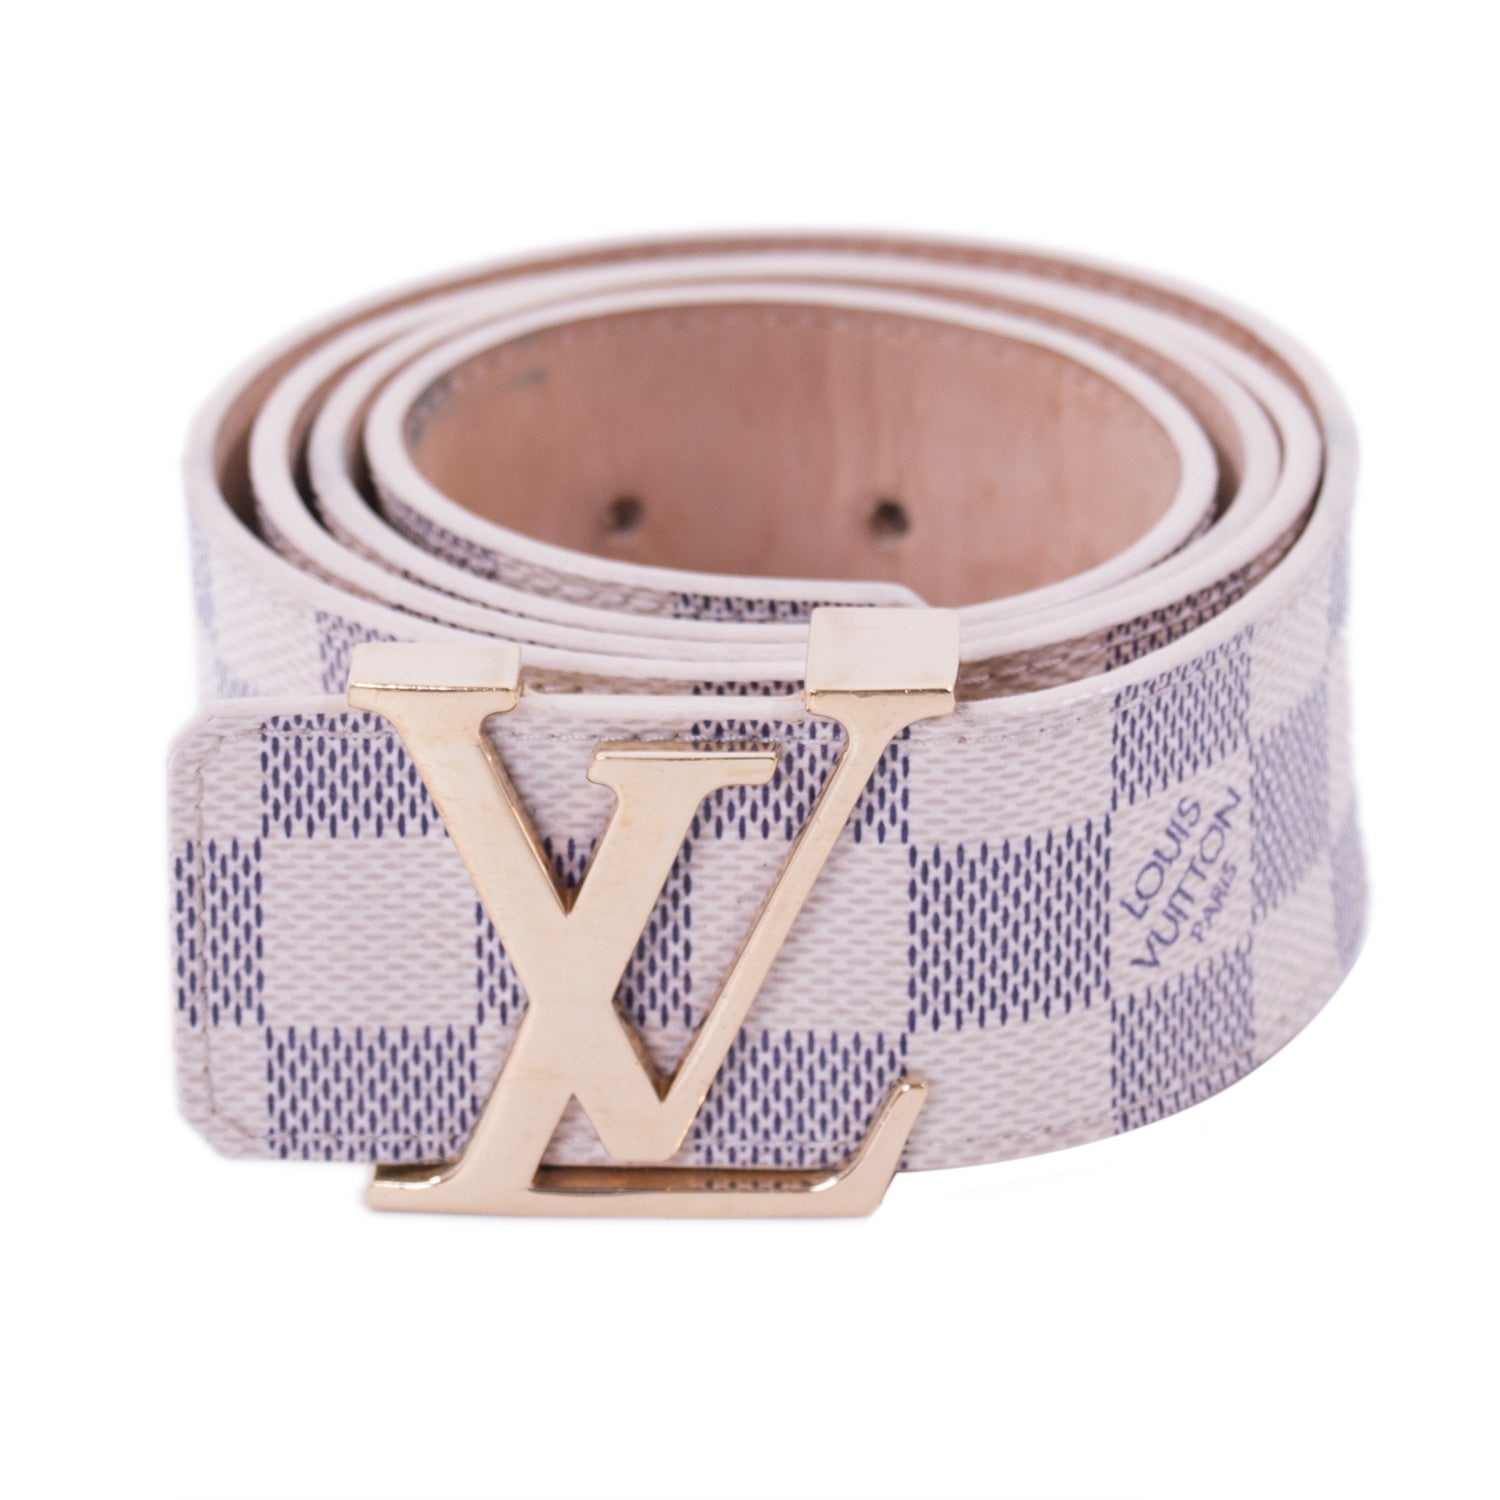 Shop authentic Louis Vuitton Damier Azur Initiales Belt at revogue